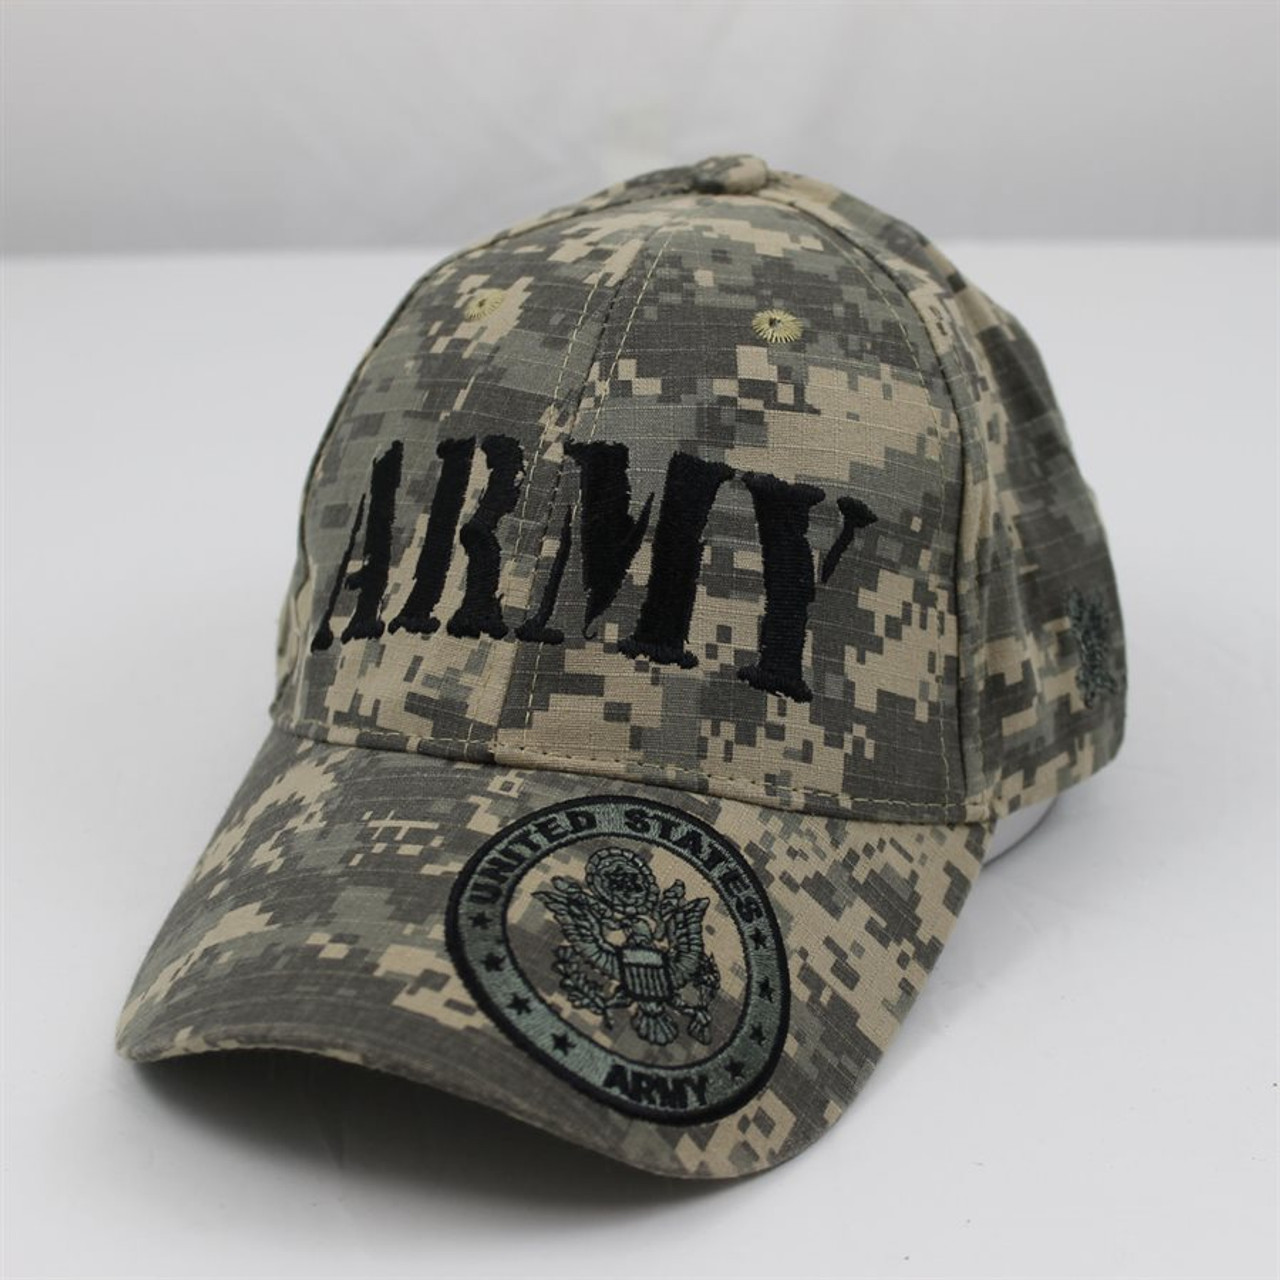 Eagle Crest 5849 - U.S. Army Cap - Cotton - ACU Digital Camouflage